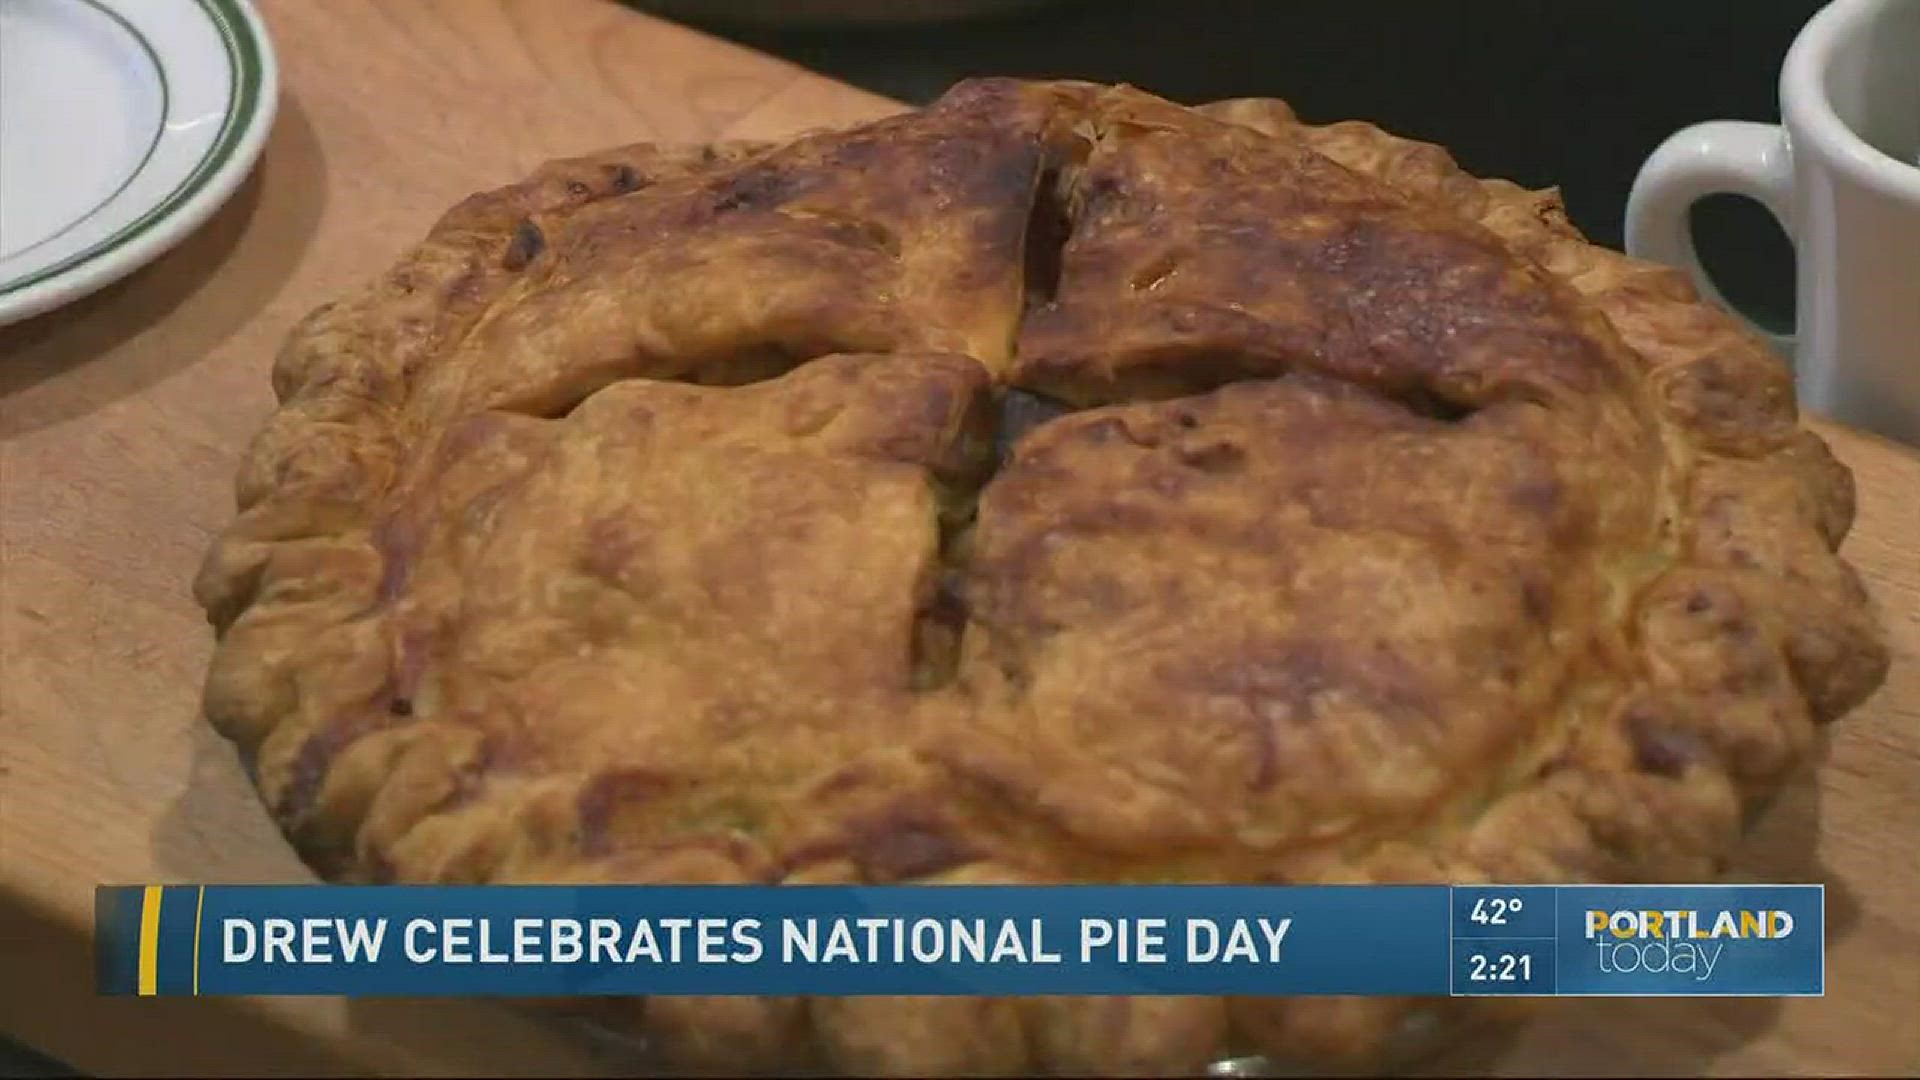 Drew celebrates National Pie Day